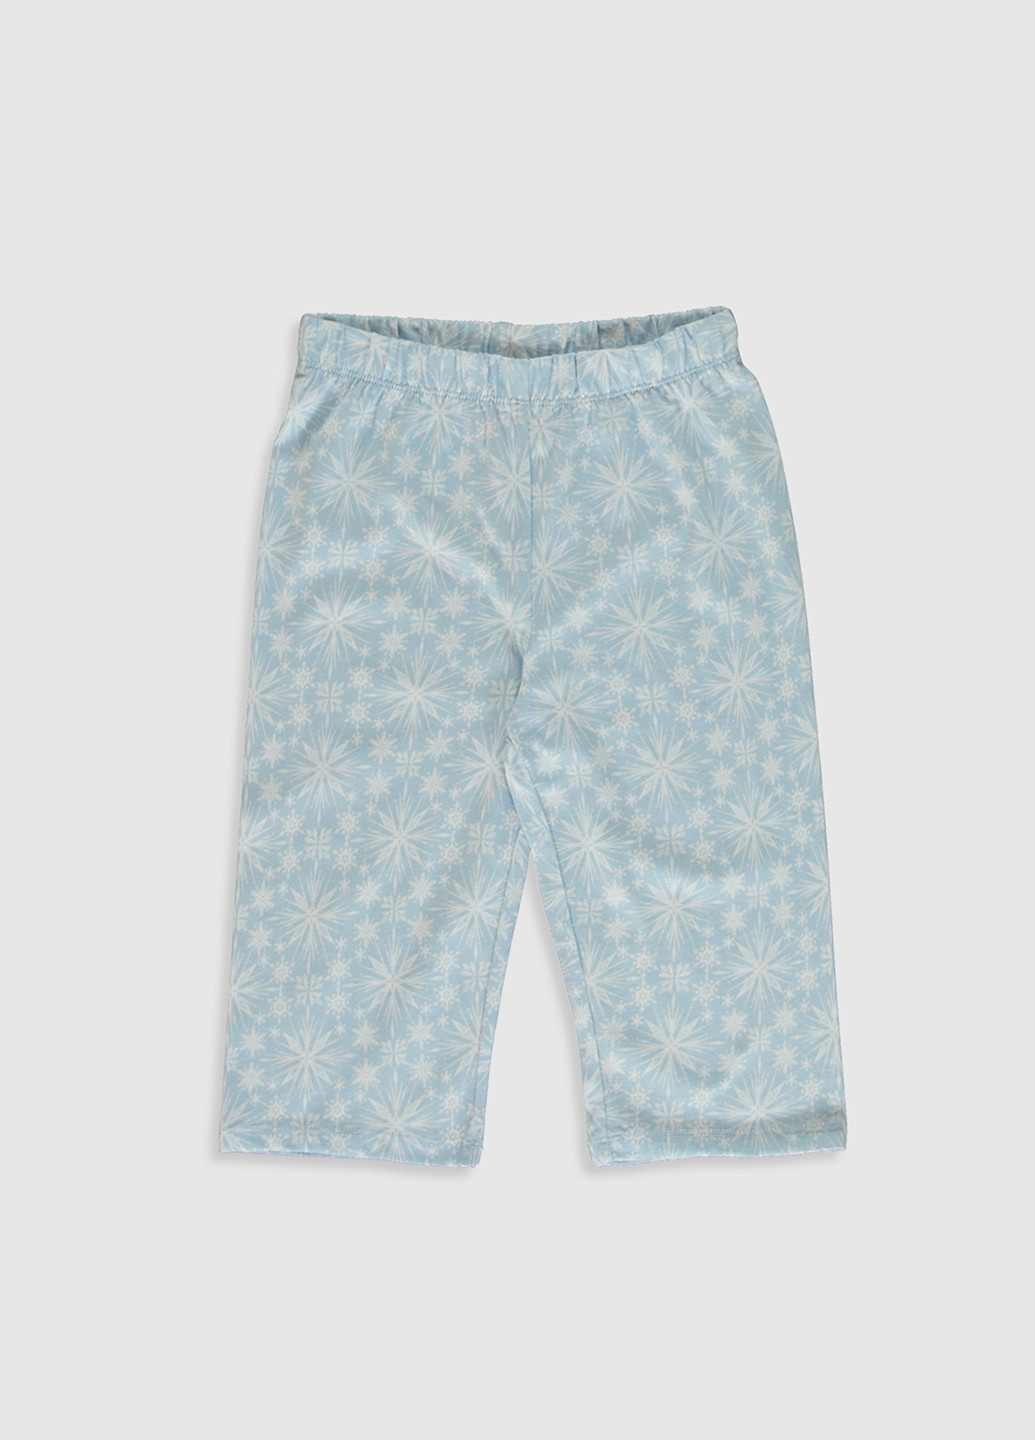 Комбинированная всесезон пижама (футболка, брюки) футболка + брюки LC Waikiki